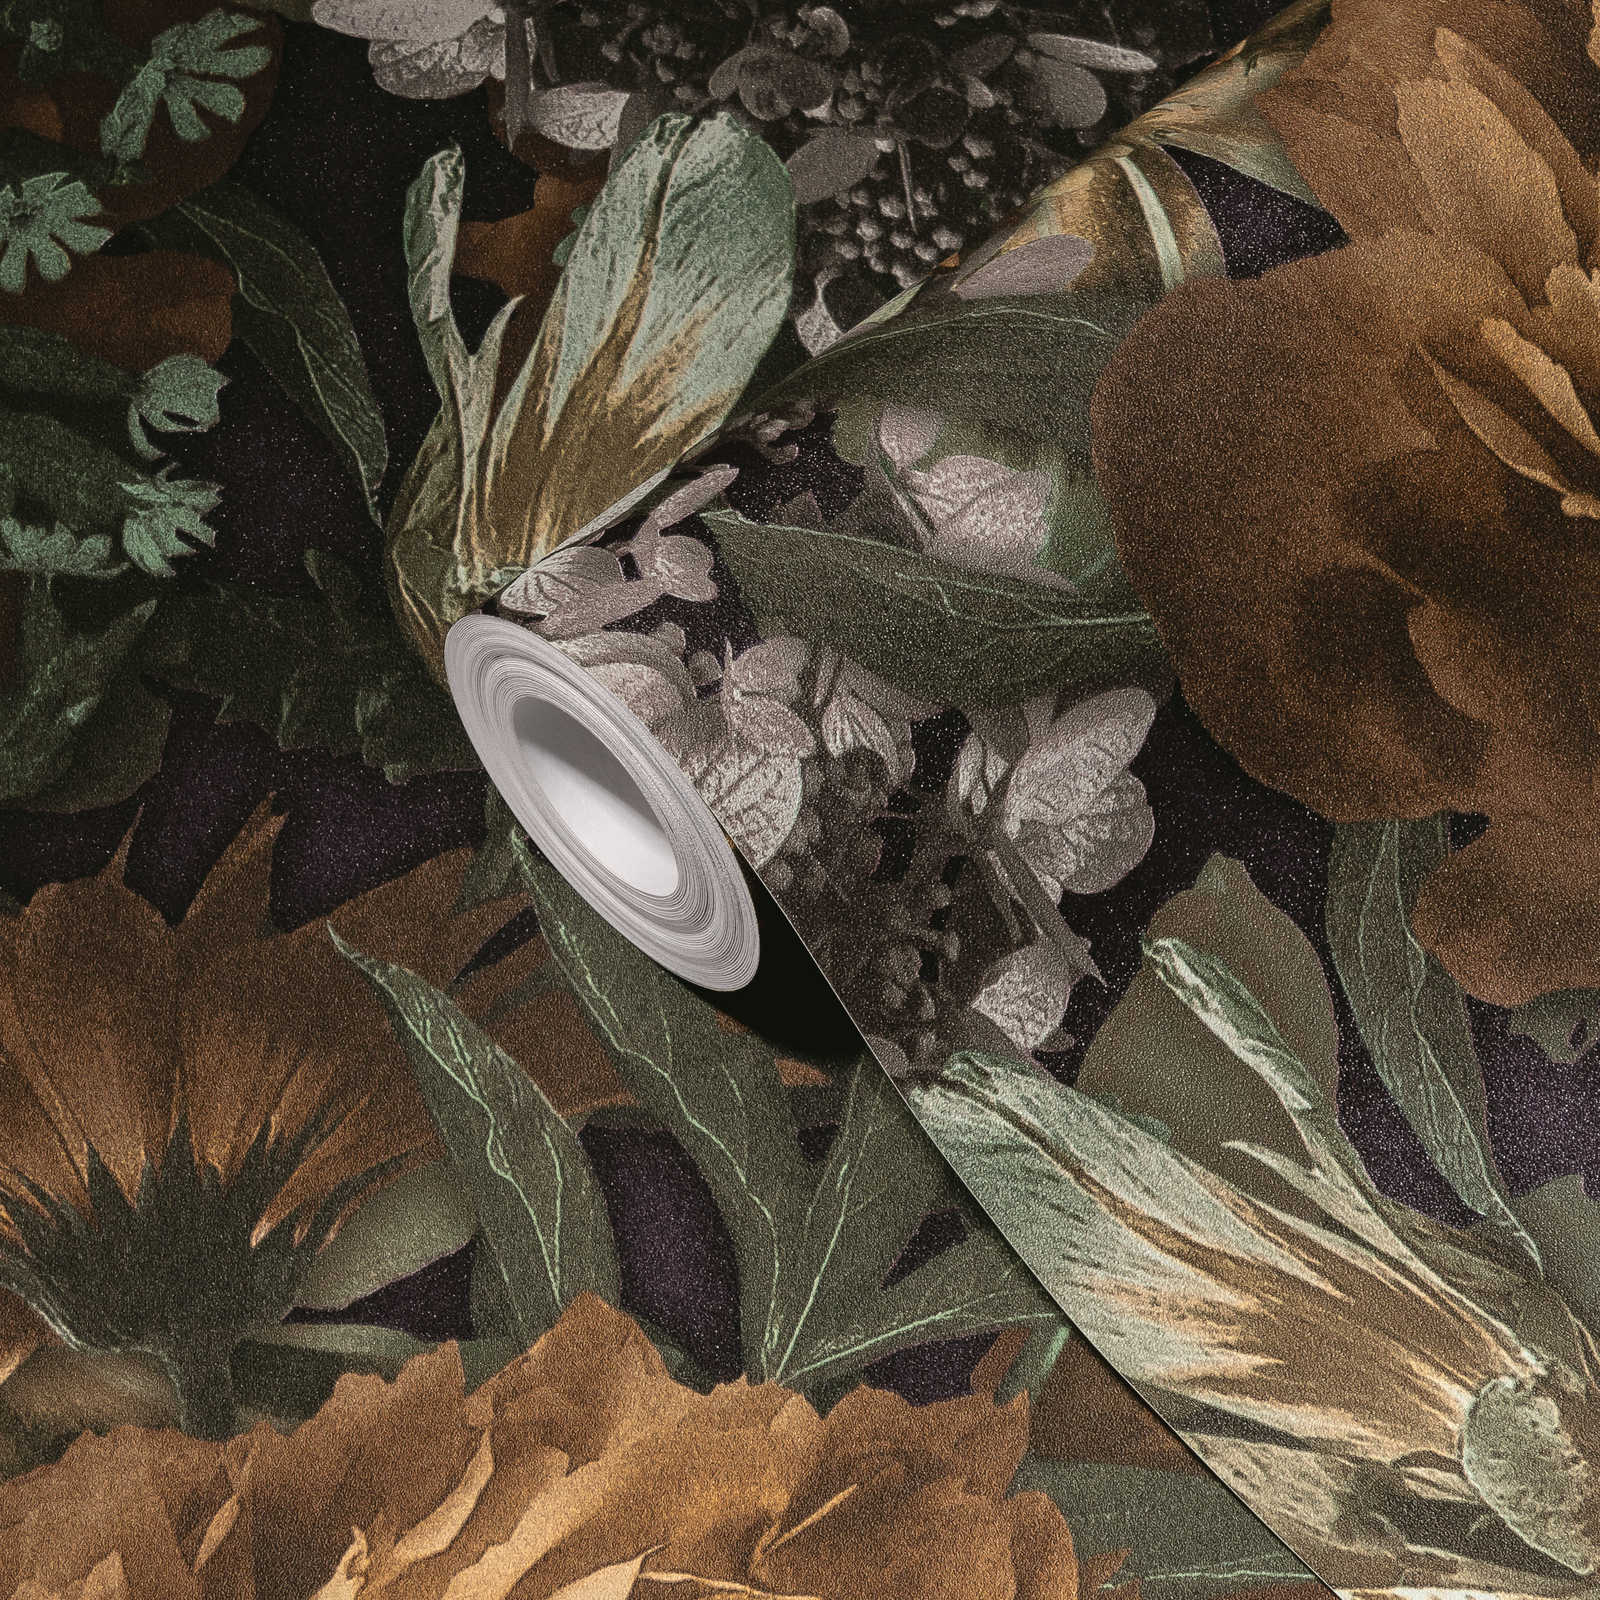             Bloemen Behang Rozen & Tulpen - Geel, Bruin, Groen
        